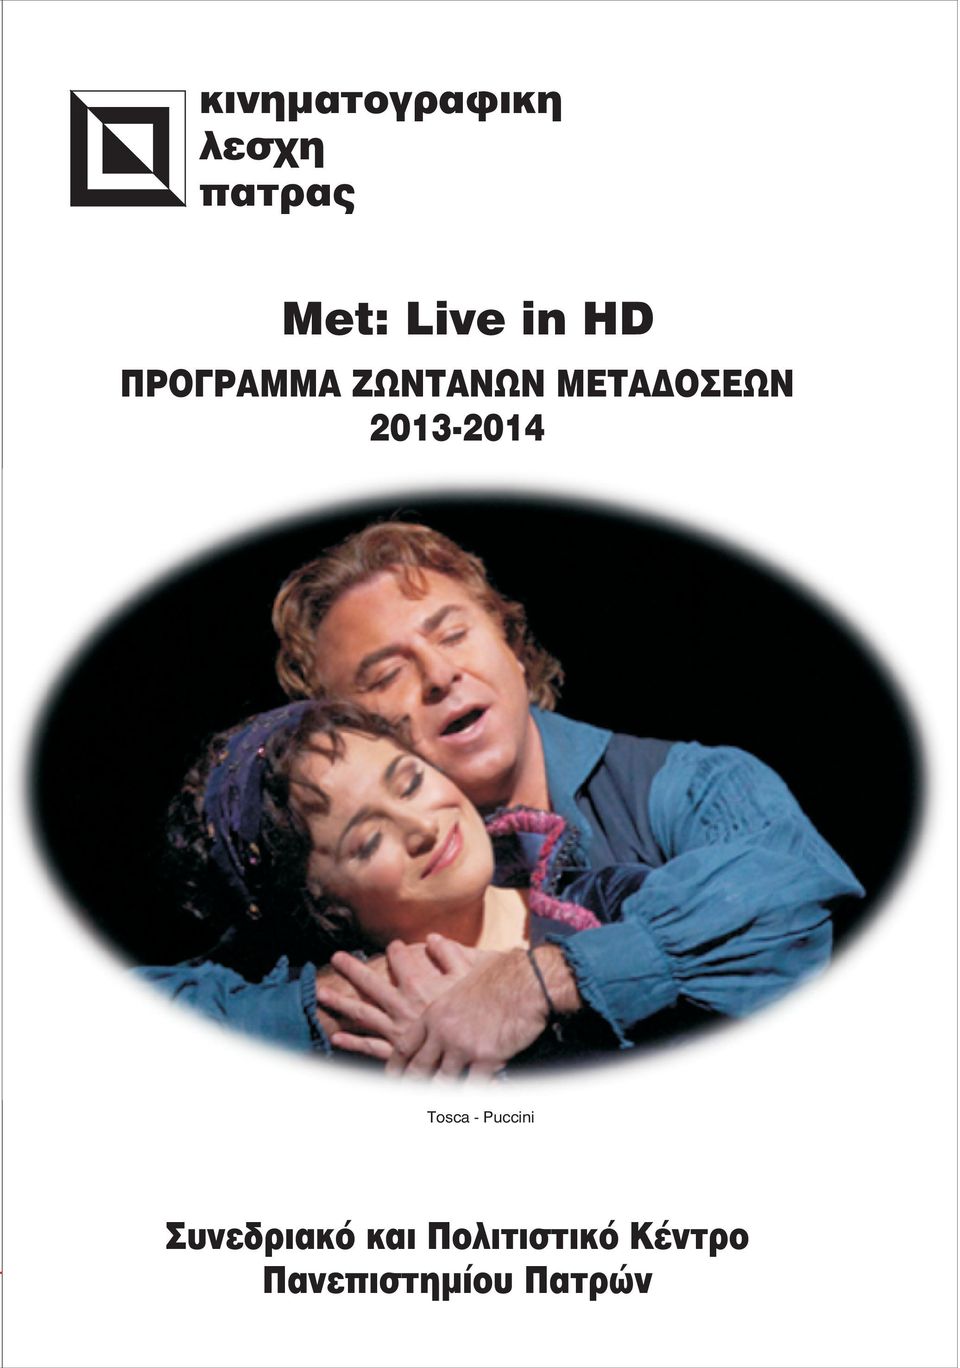 2013-2014 Tosca - Puccini Óõíåäñéáêü